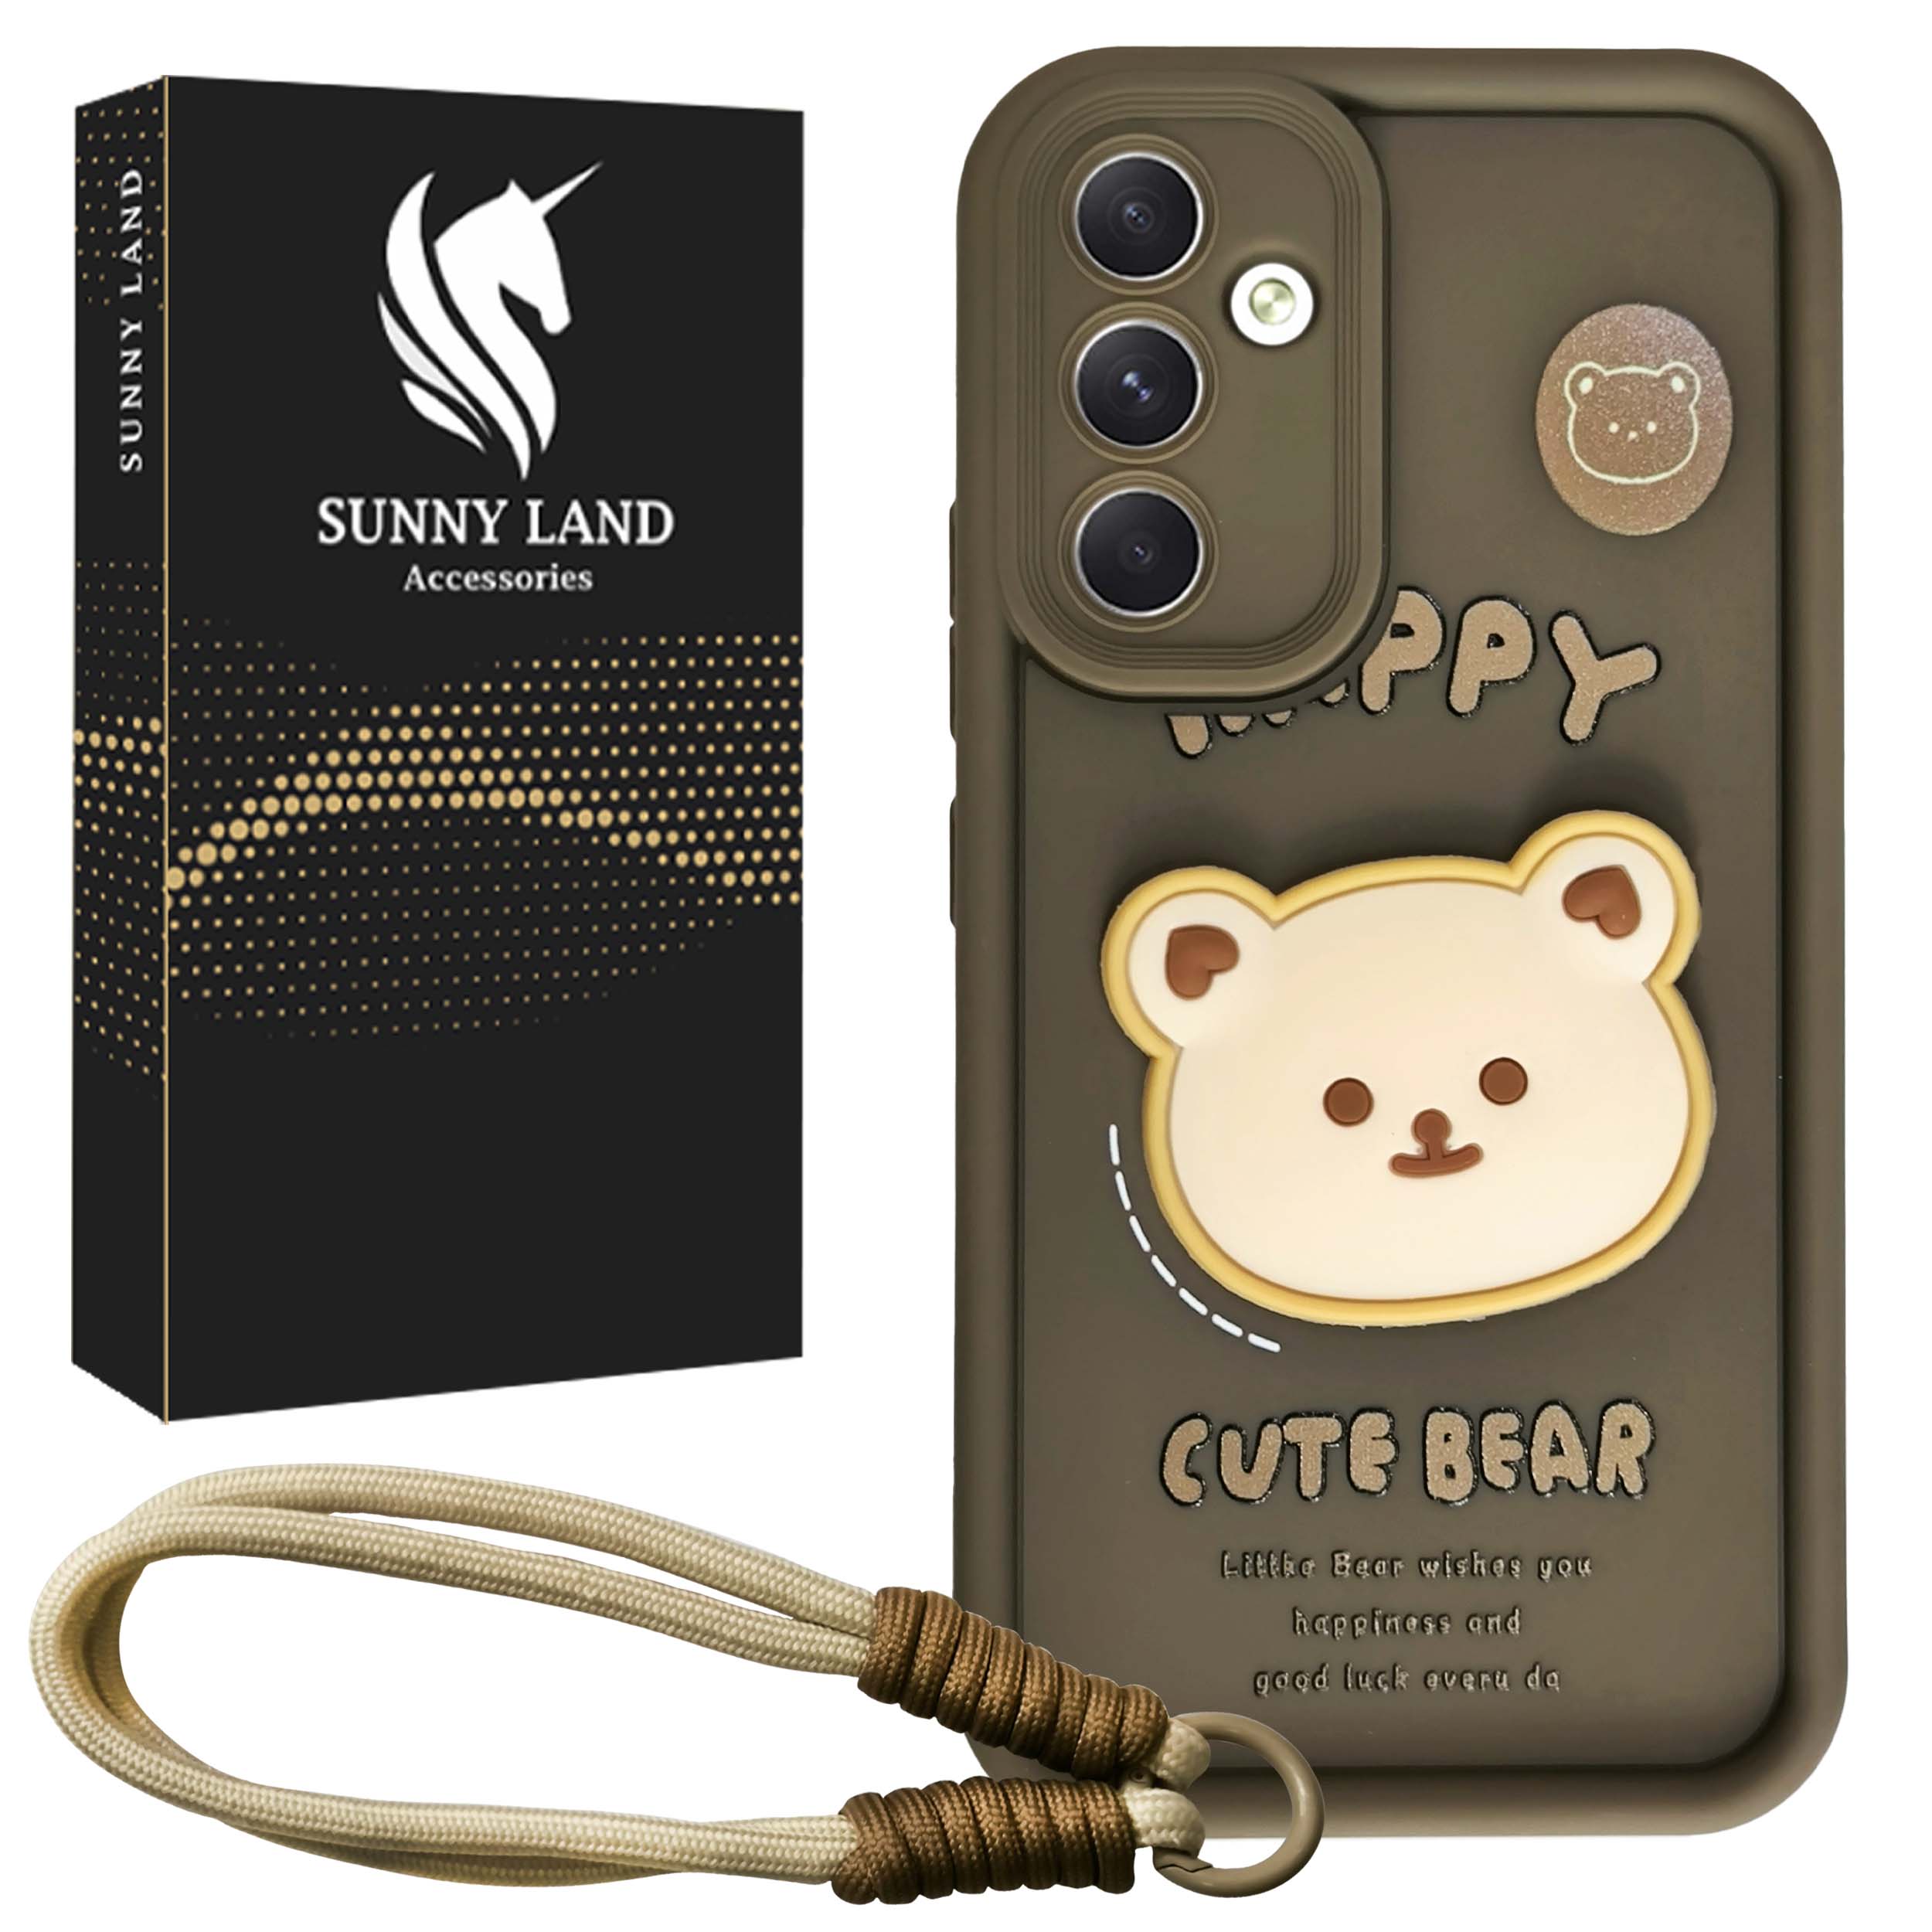 کاور سانی لند مدل Bear مناسب برای گوشی موبایل سامسونگ Galaxy A55 به همراه بندآویز